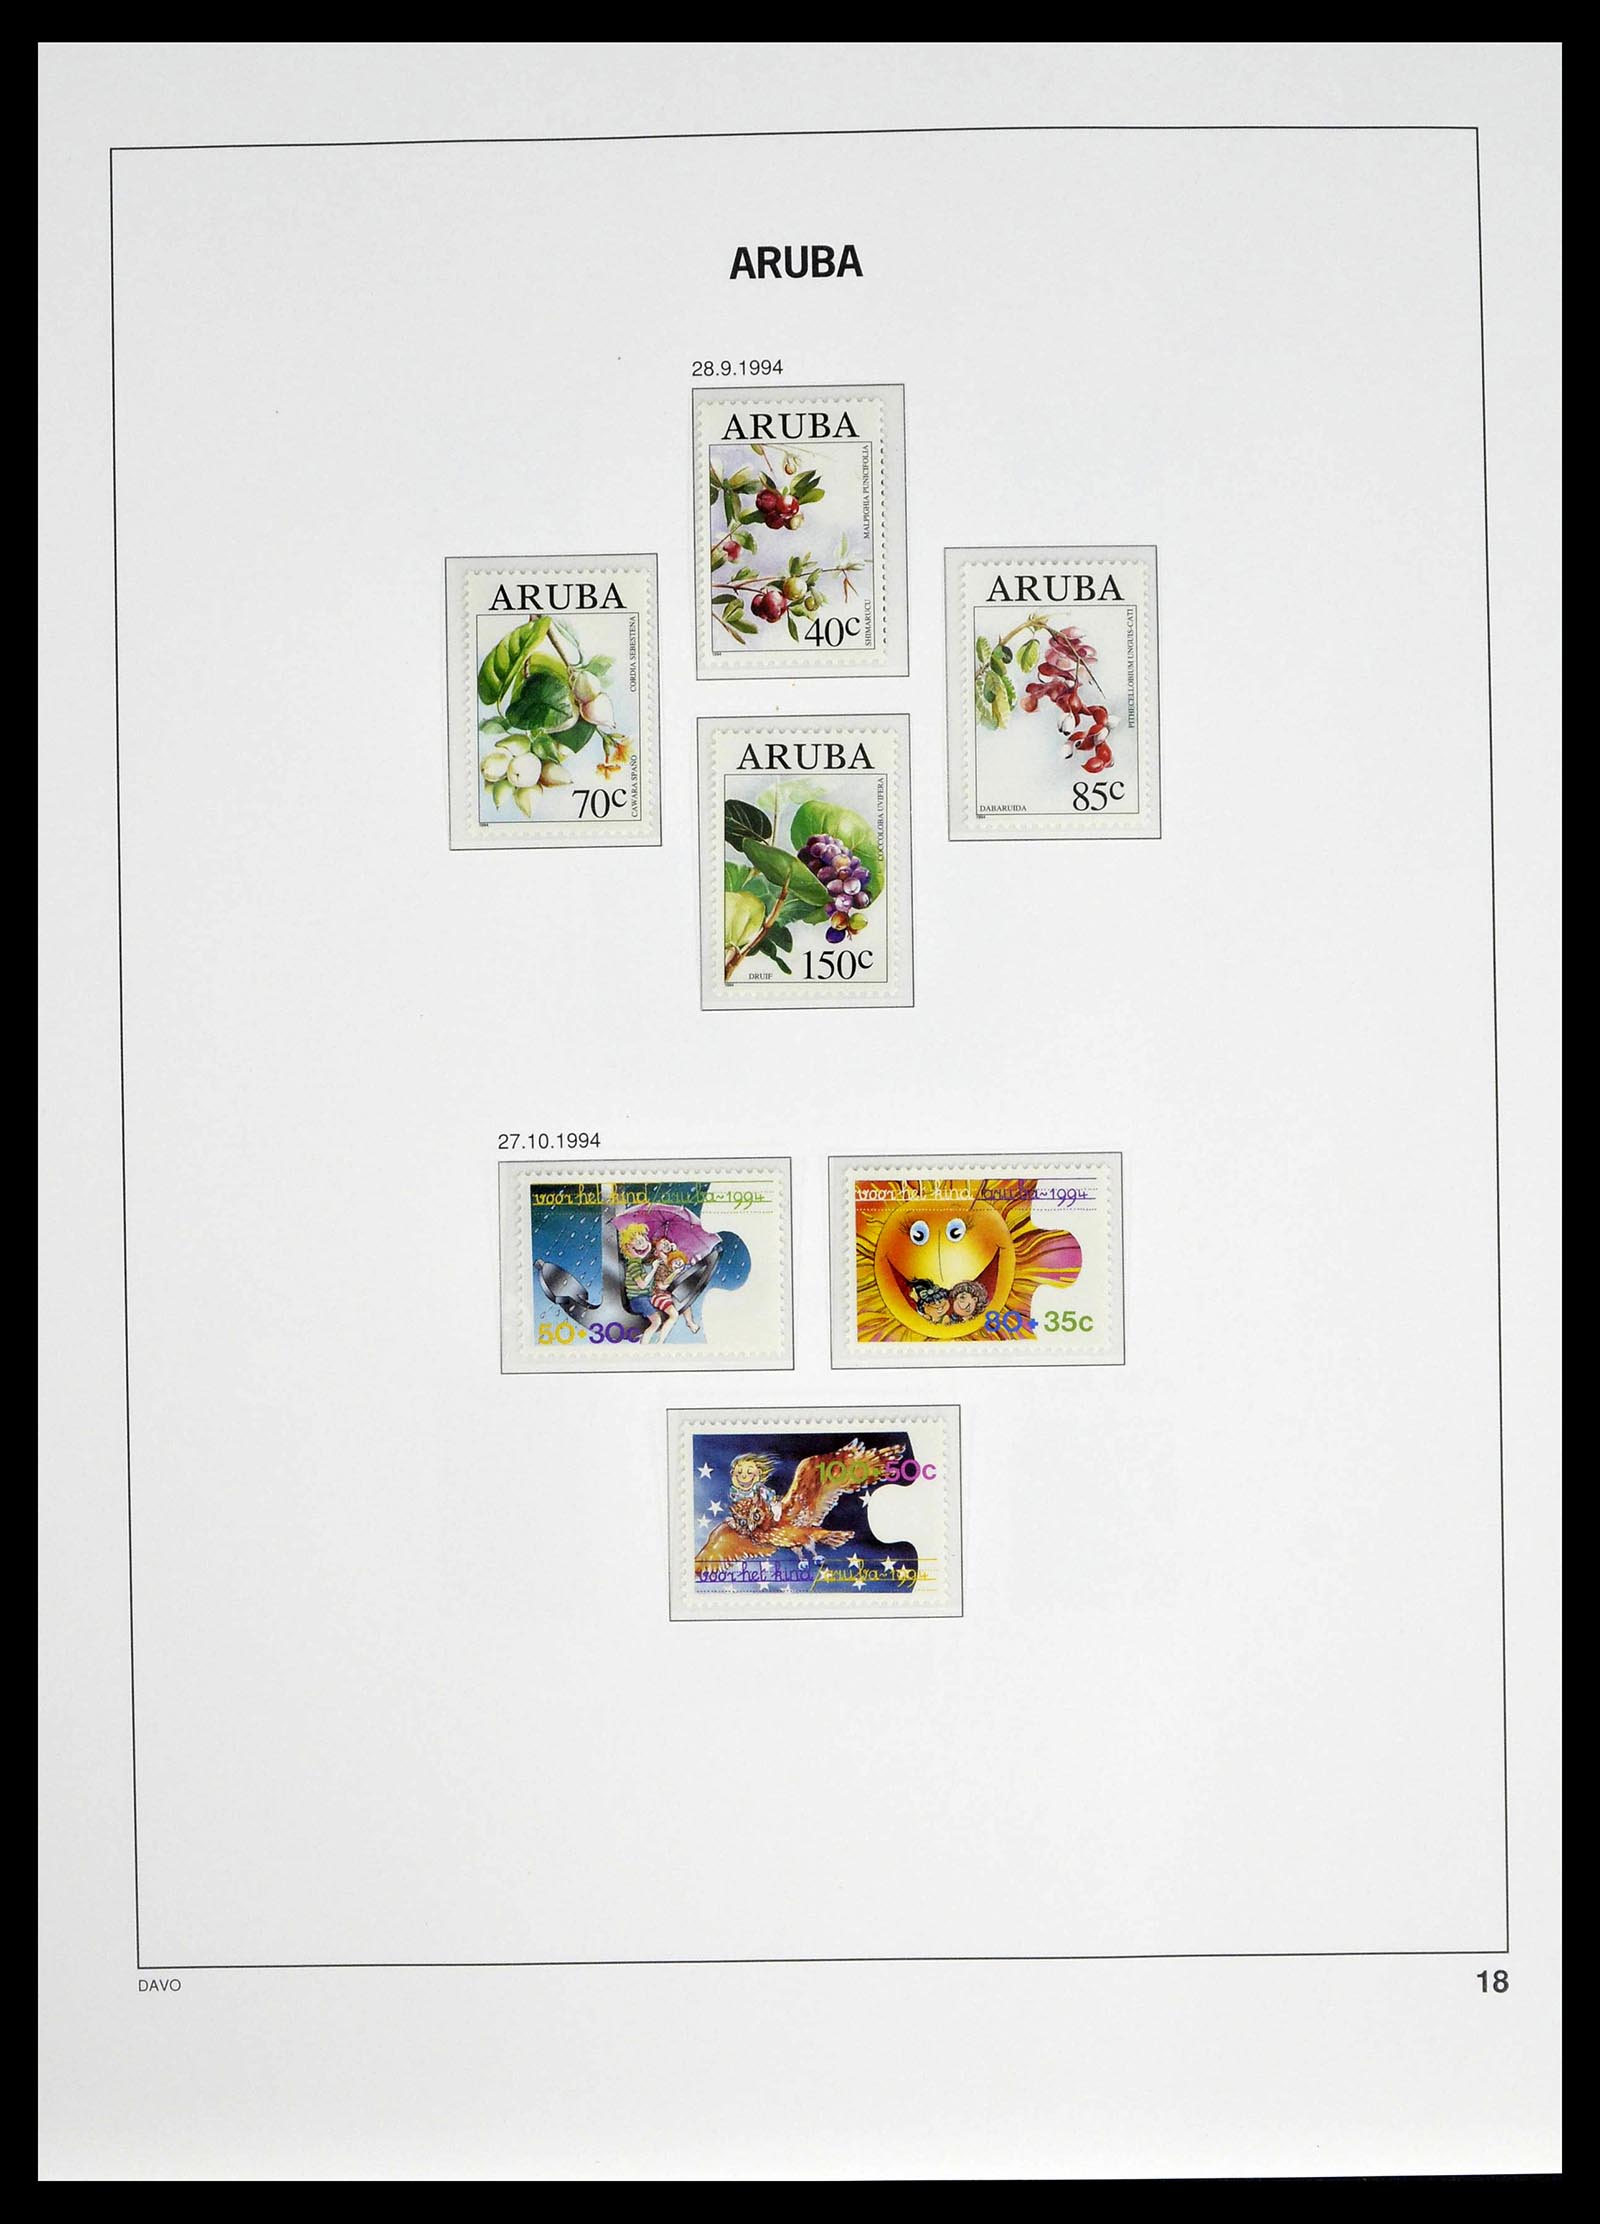 39361 0018 - Stamp collection 39361 Aruba 1986-2013.